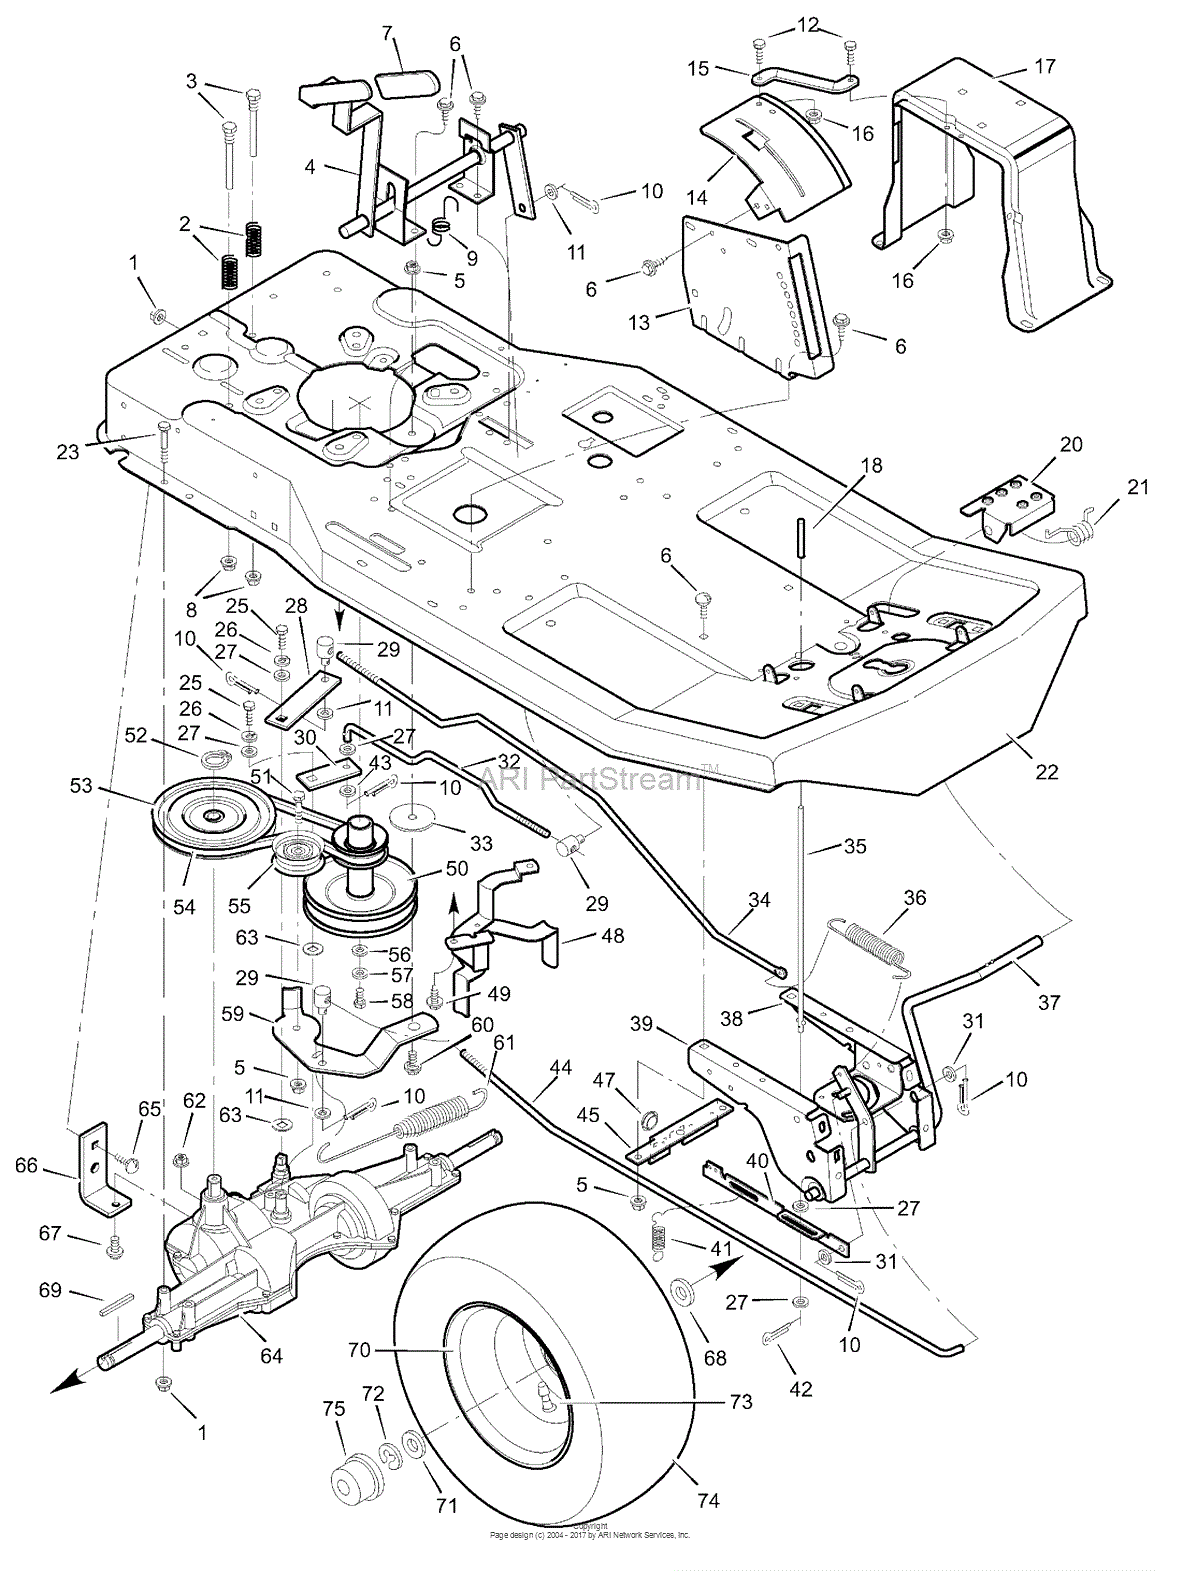 Murray 30577x8A - Rear Engine Rider (1999) Parts Diagram ... 1 4 hp kawasaki engine diagram 